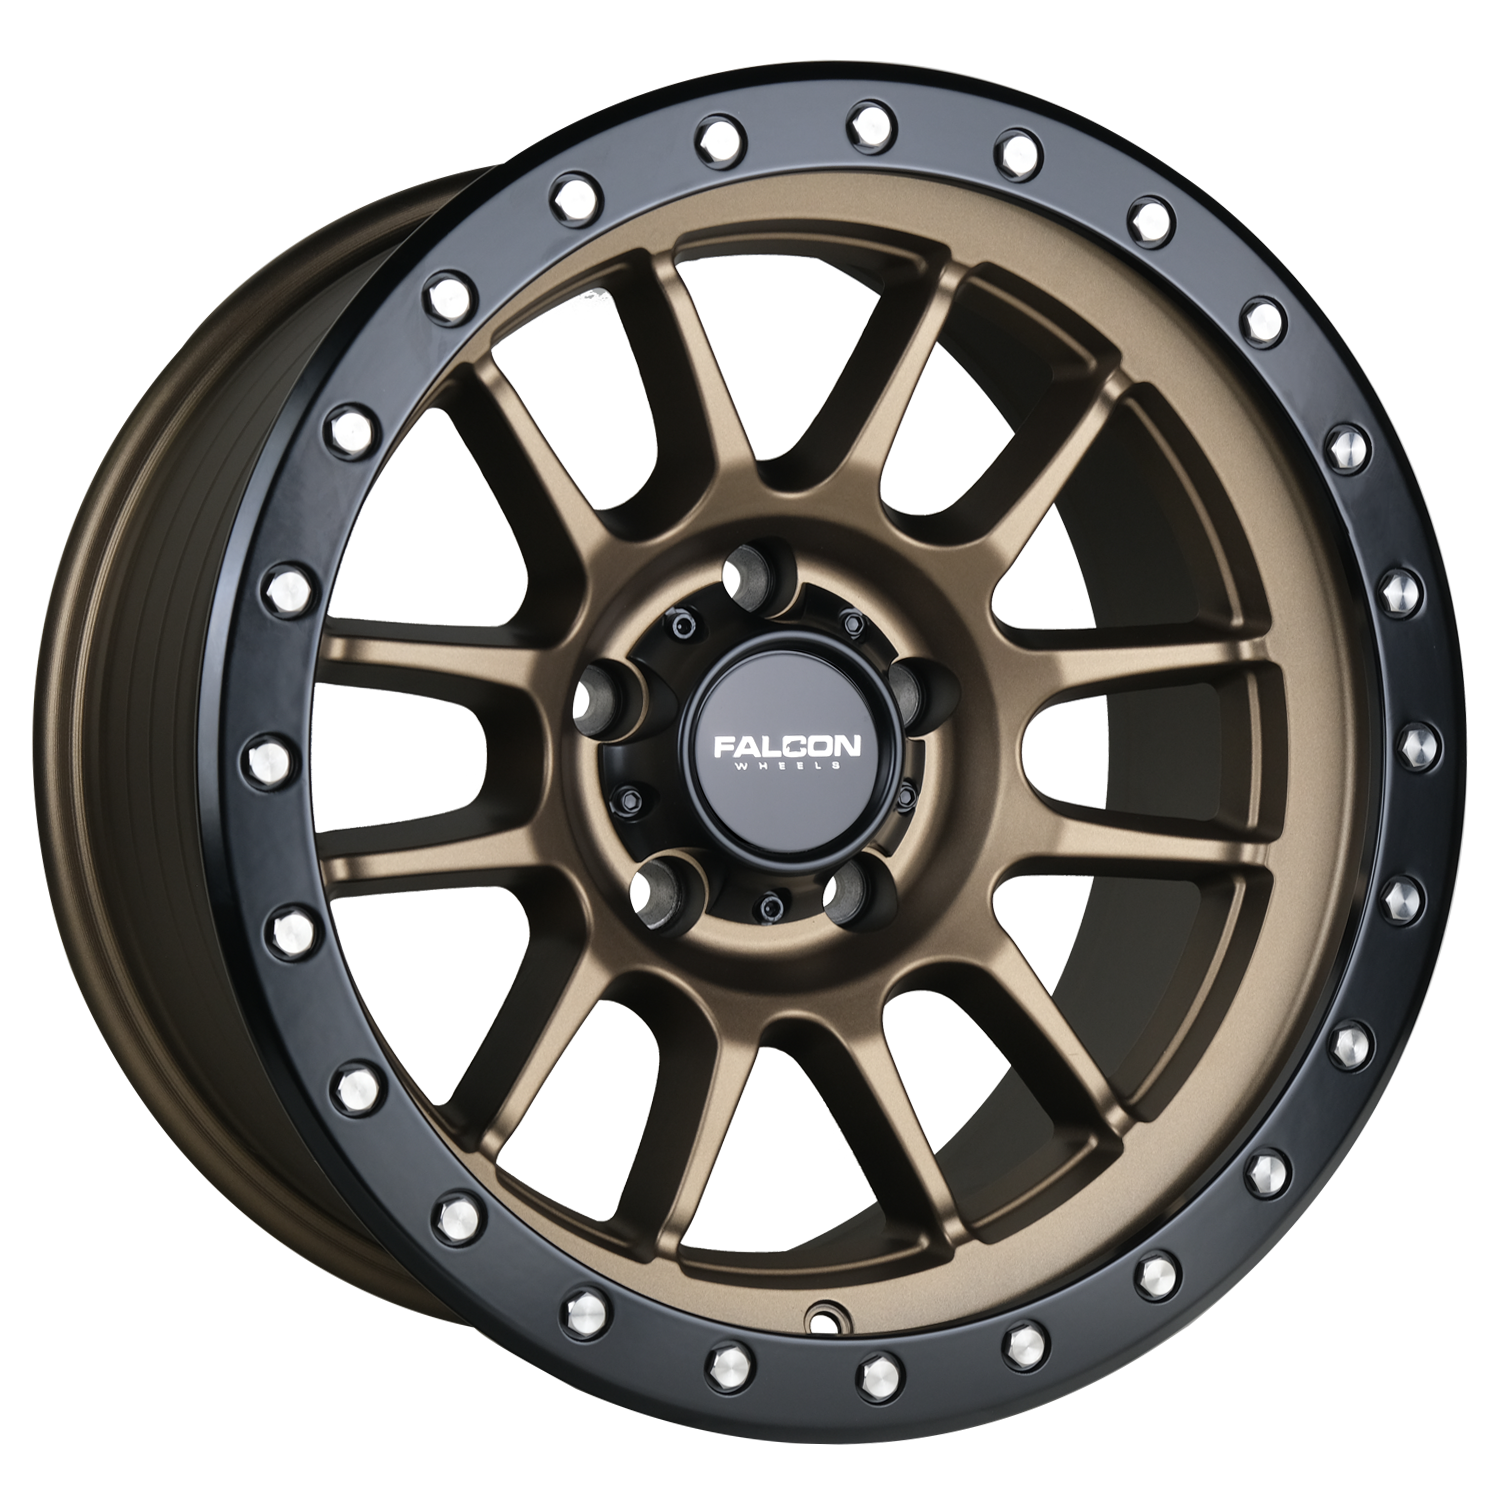 T7 - Matte Bronze 17x9 - Premium Wheels from Falcon Off-Road Wheels - Just $295! Shop now at Falcon Off-Road Wheels 